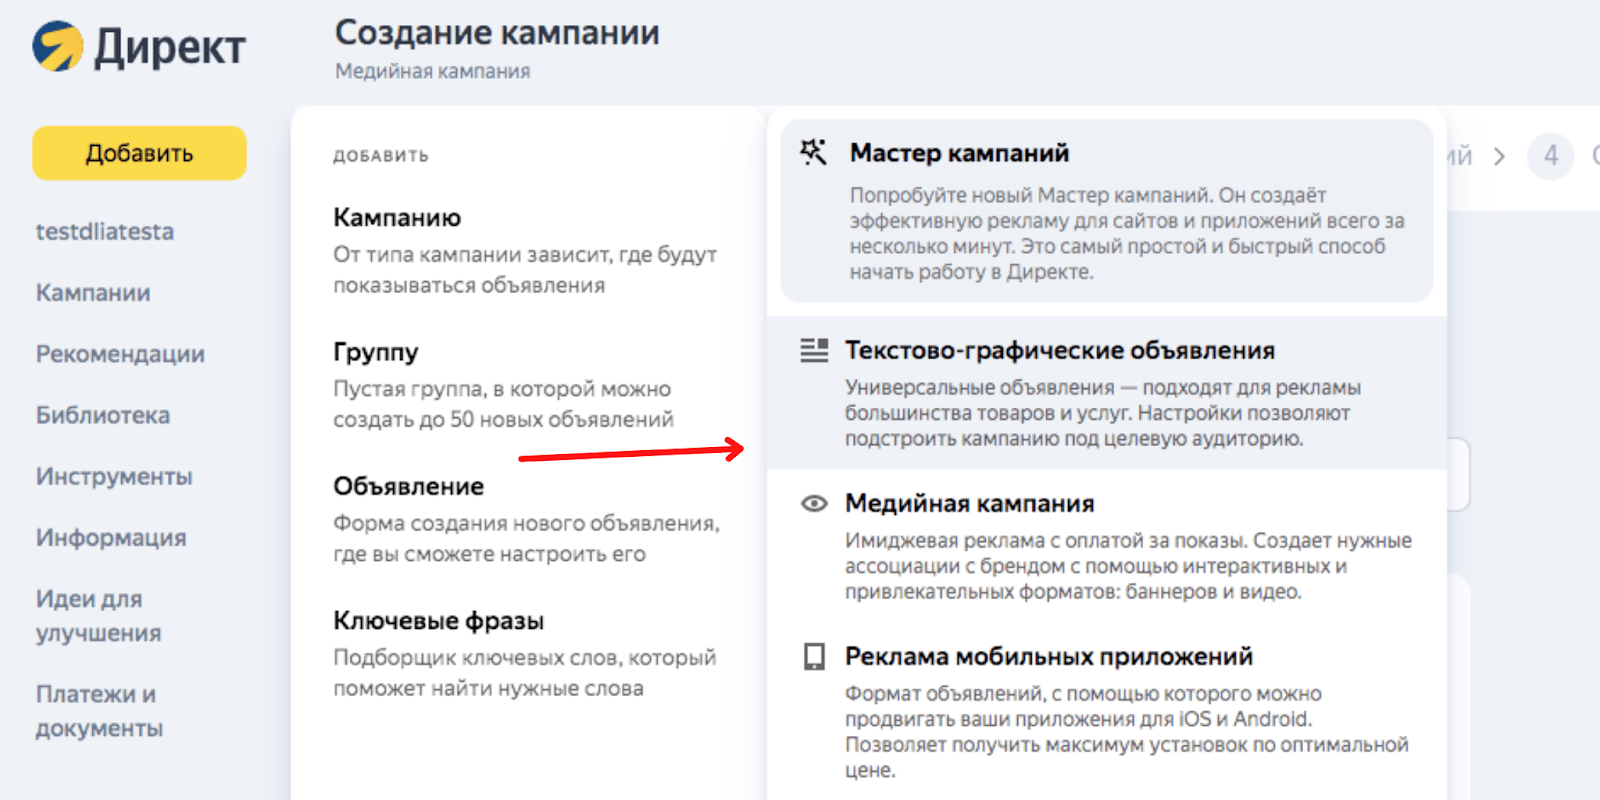 Как настроить стратегию в Яндекс.Директ